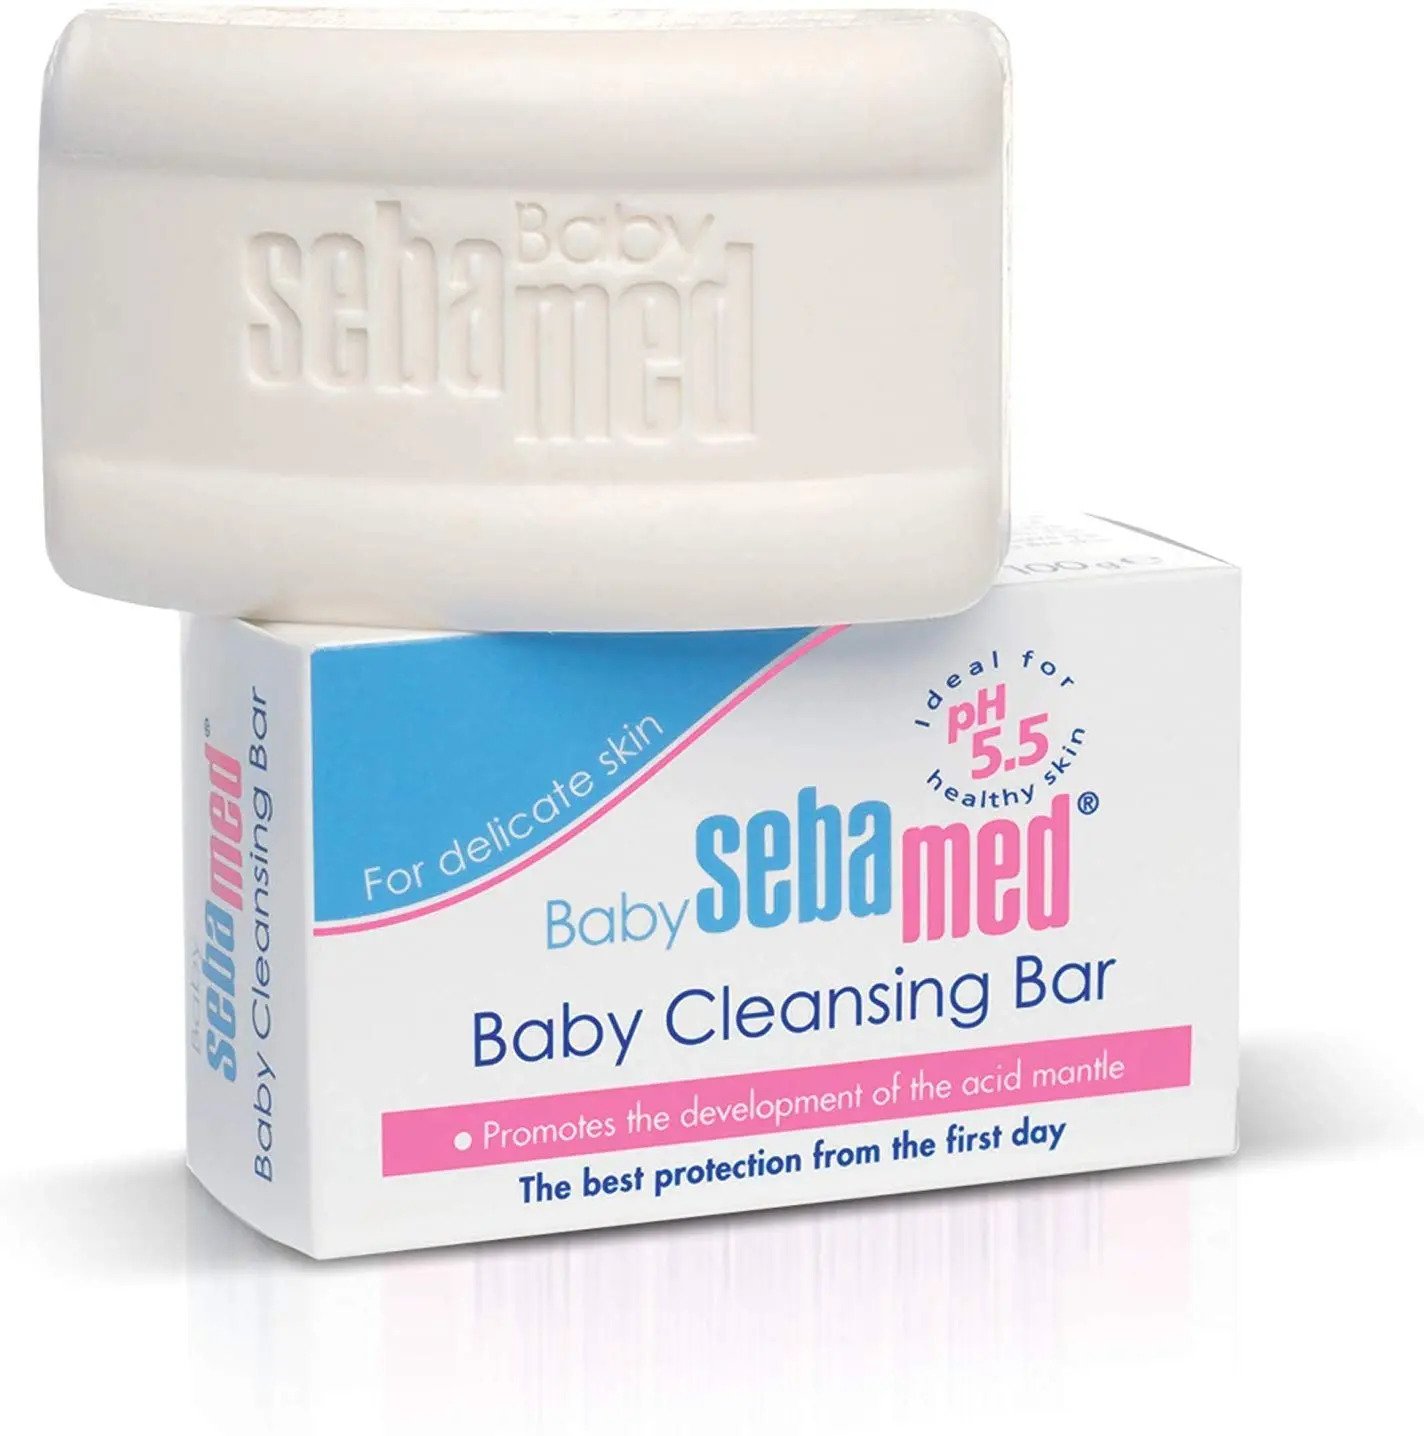 SEBAMED-BABY-CLEANSING-BAR-100G.jpg